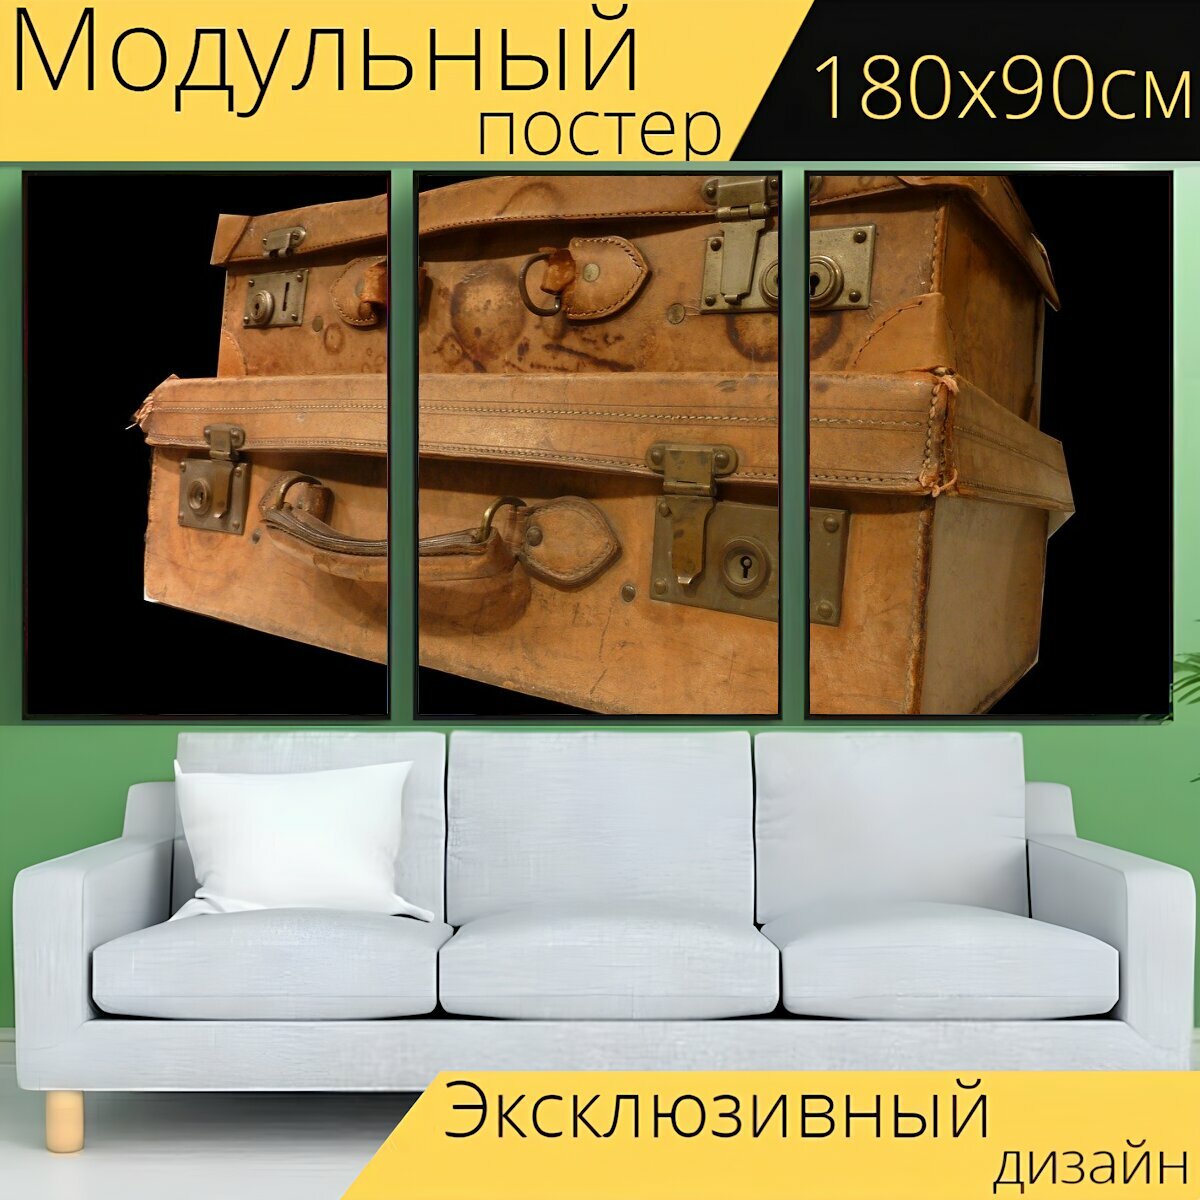 Модульный постер "Чемодан, камера, багаж" 180 x 90 см. для интерьера